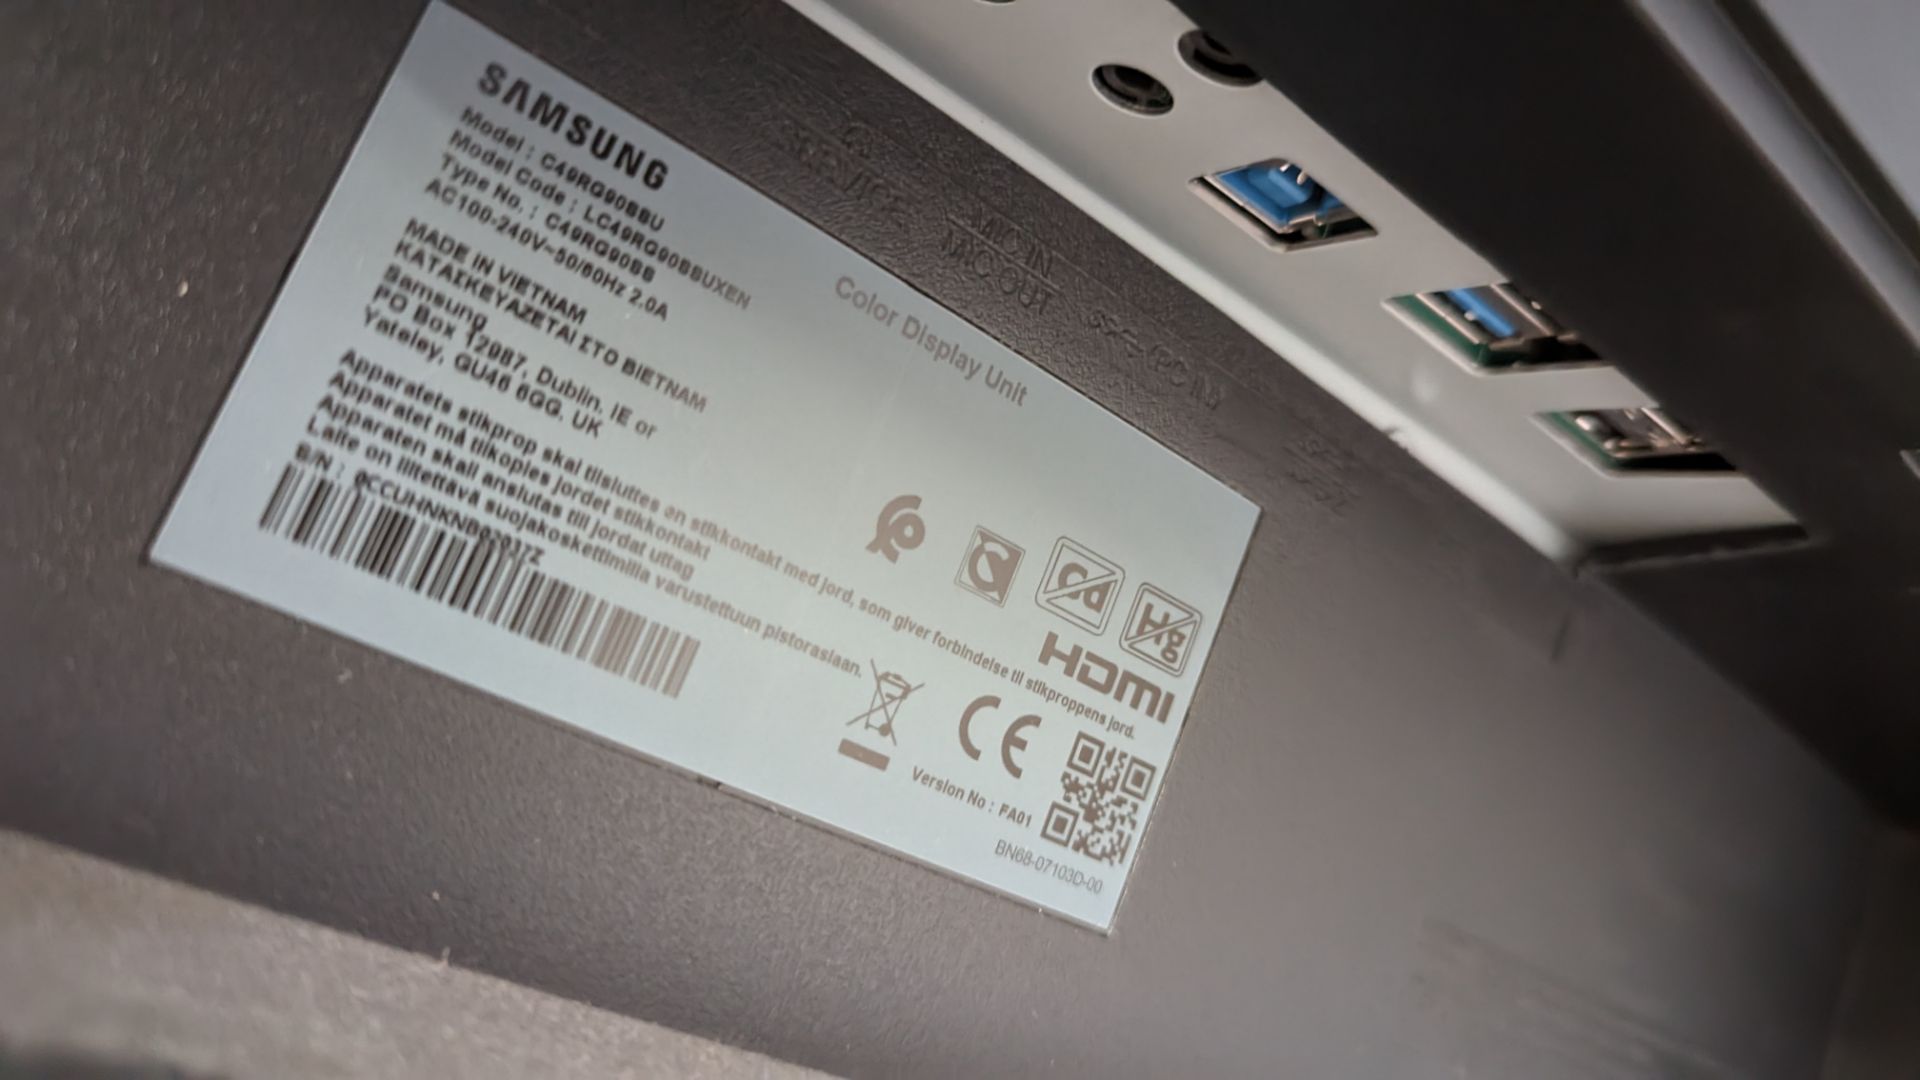 Samsung 49" Odyssey G9 dual-QHD curved gaming monitor model C49RG90SSU - Image 14 of 18